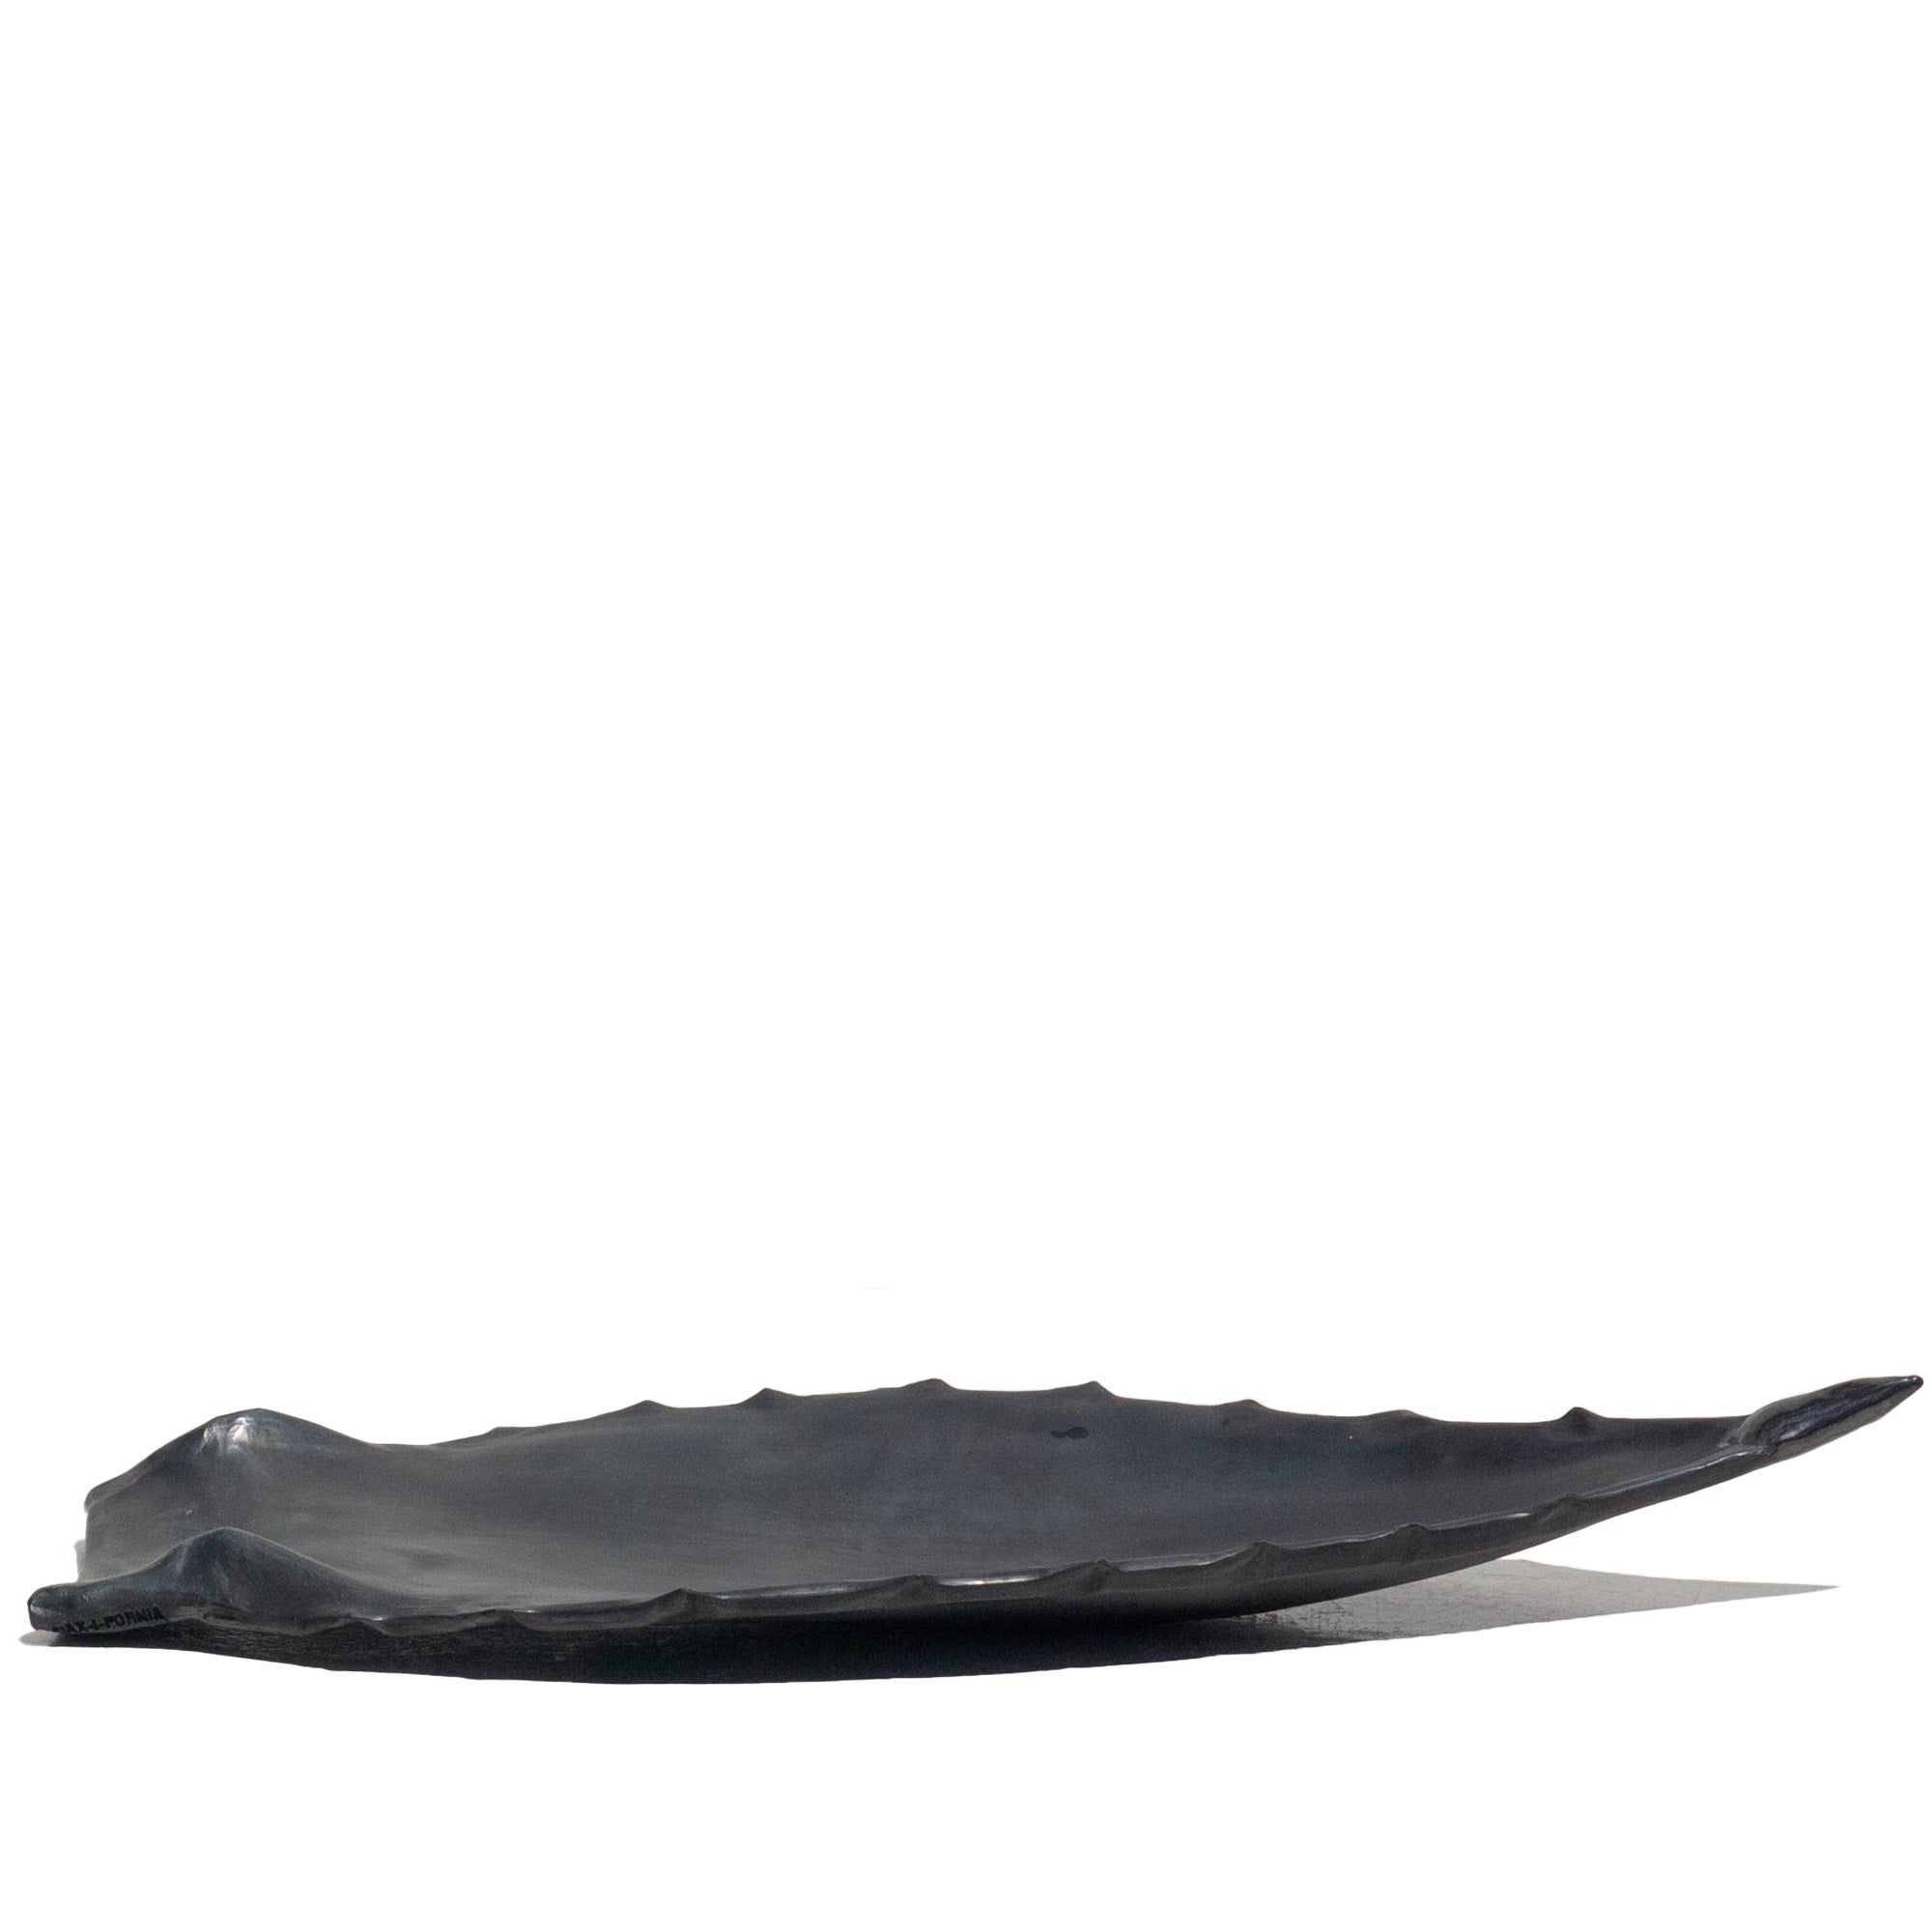 Agave Leaf Black Clay LG